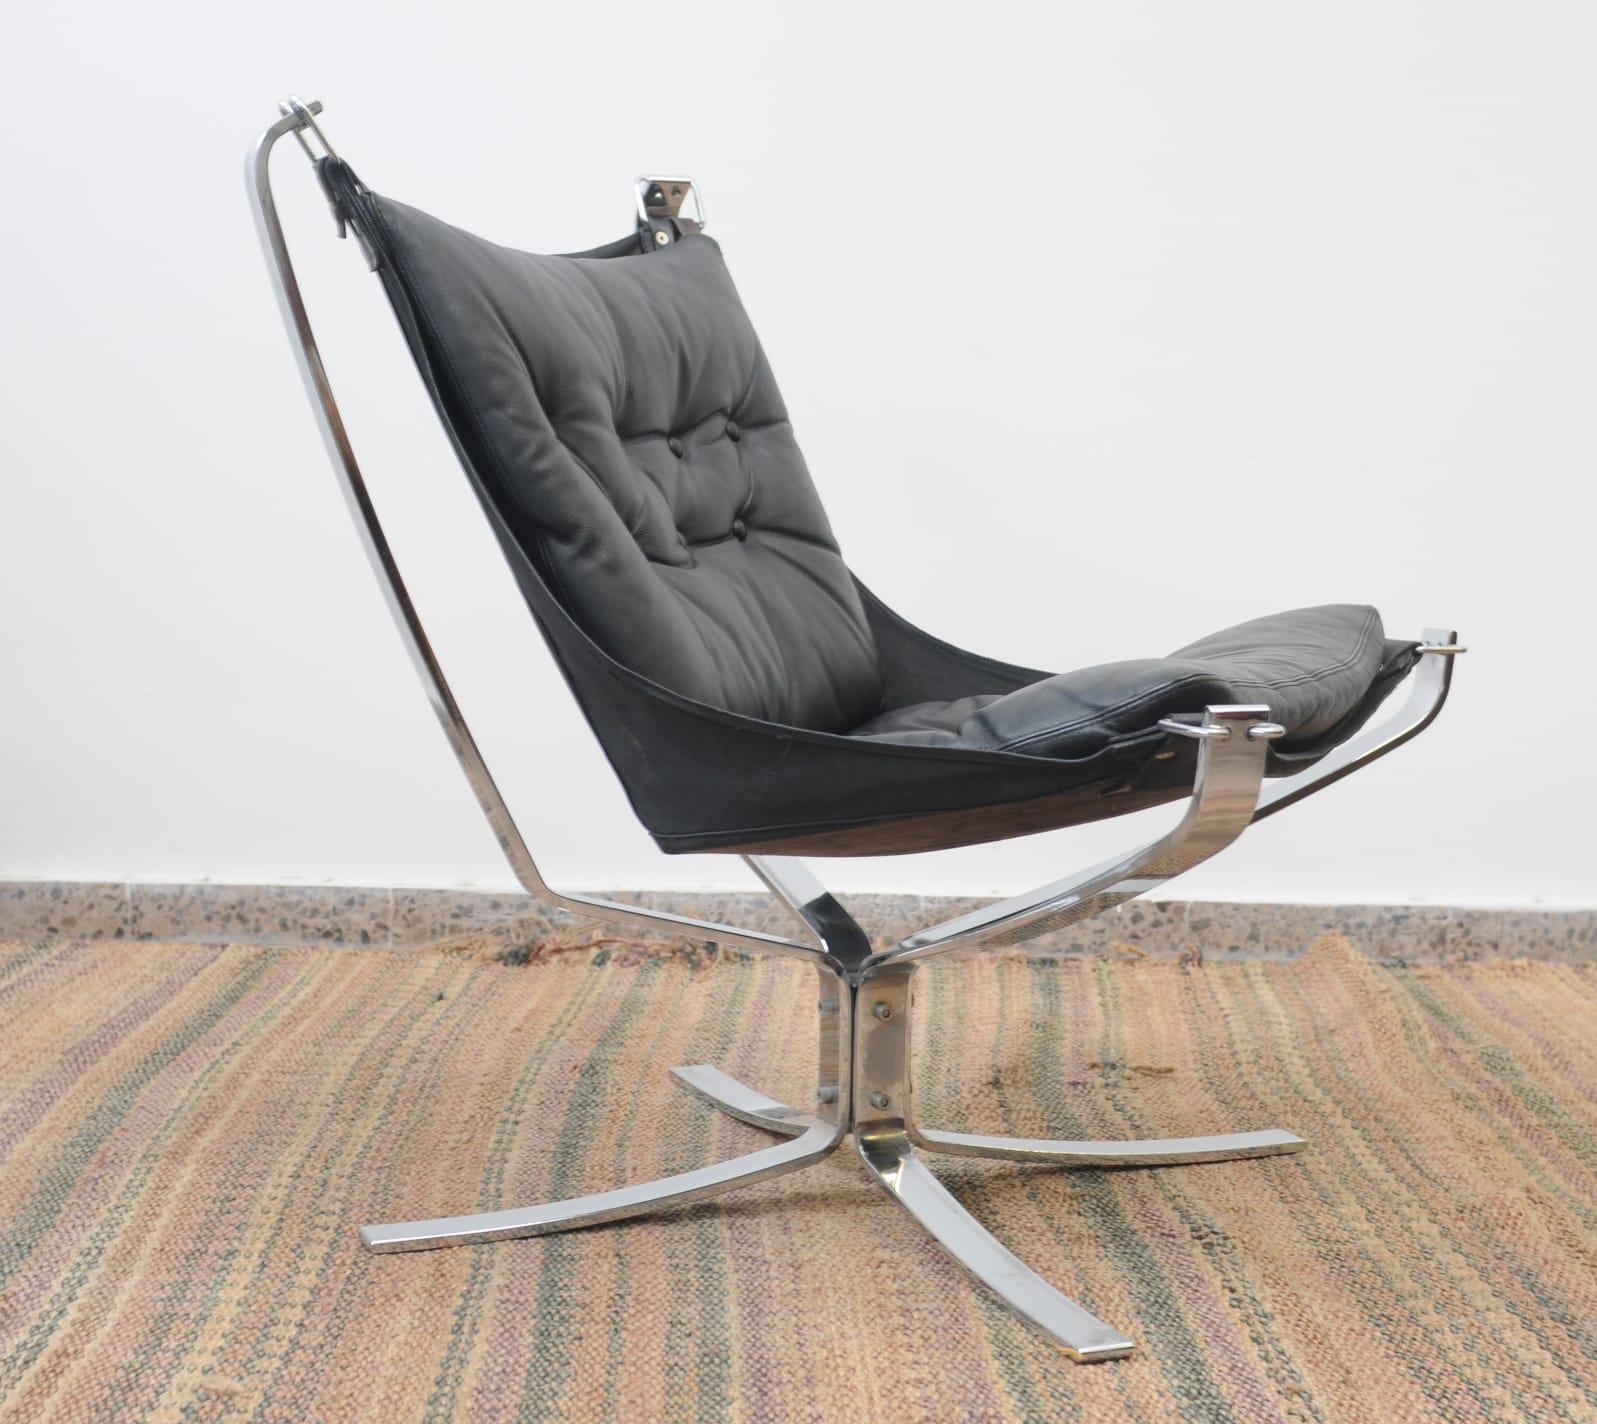 Rares et magnifiques chaises de salon CIRCA en métal chromé de Sigurd Ressell, datant du début ou du milieu des années 1970.
